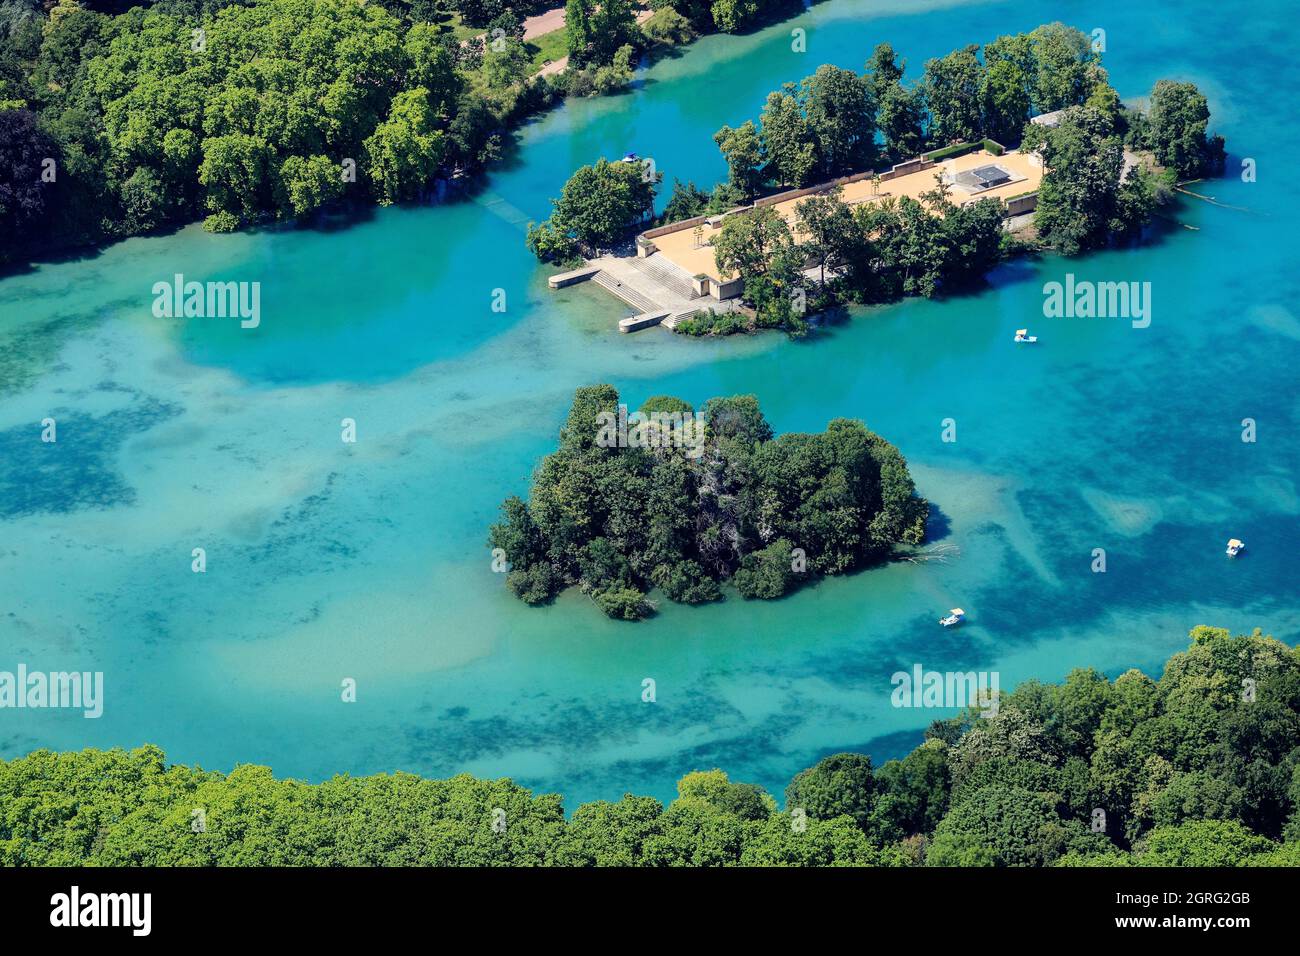 France, Rhone, Lyon, 6th arrondissement, les Brotteaux district, Tete d'Or park, Souvenir island on the Tete d'Or lake (aerial view) Stock Photo